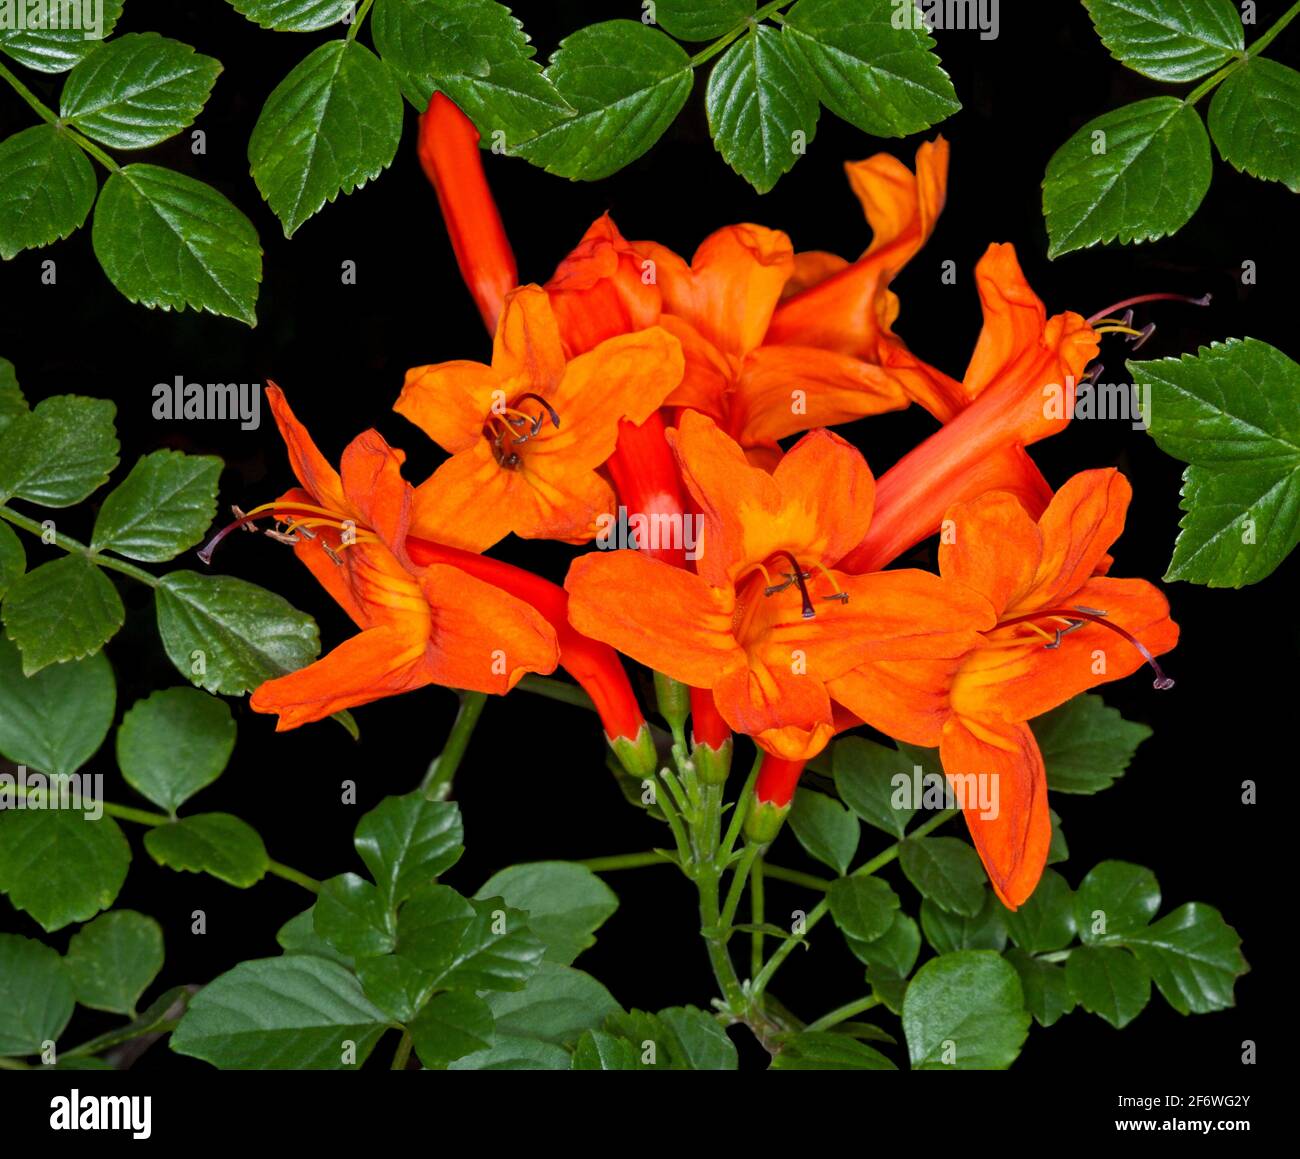 Image stupéfiante d'un amas de fleurs orange vif / rouges et de feuilles vert émeraude de Tecoma capensis, Cape Honeysuckle, arbuste de jardin, sur fond noir Banque D'Images